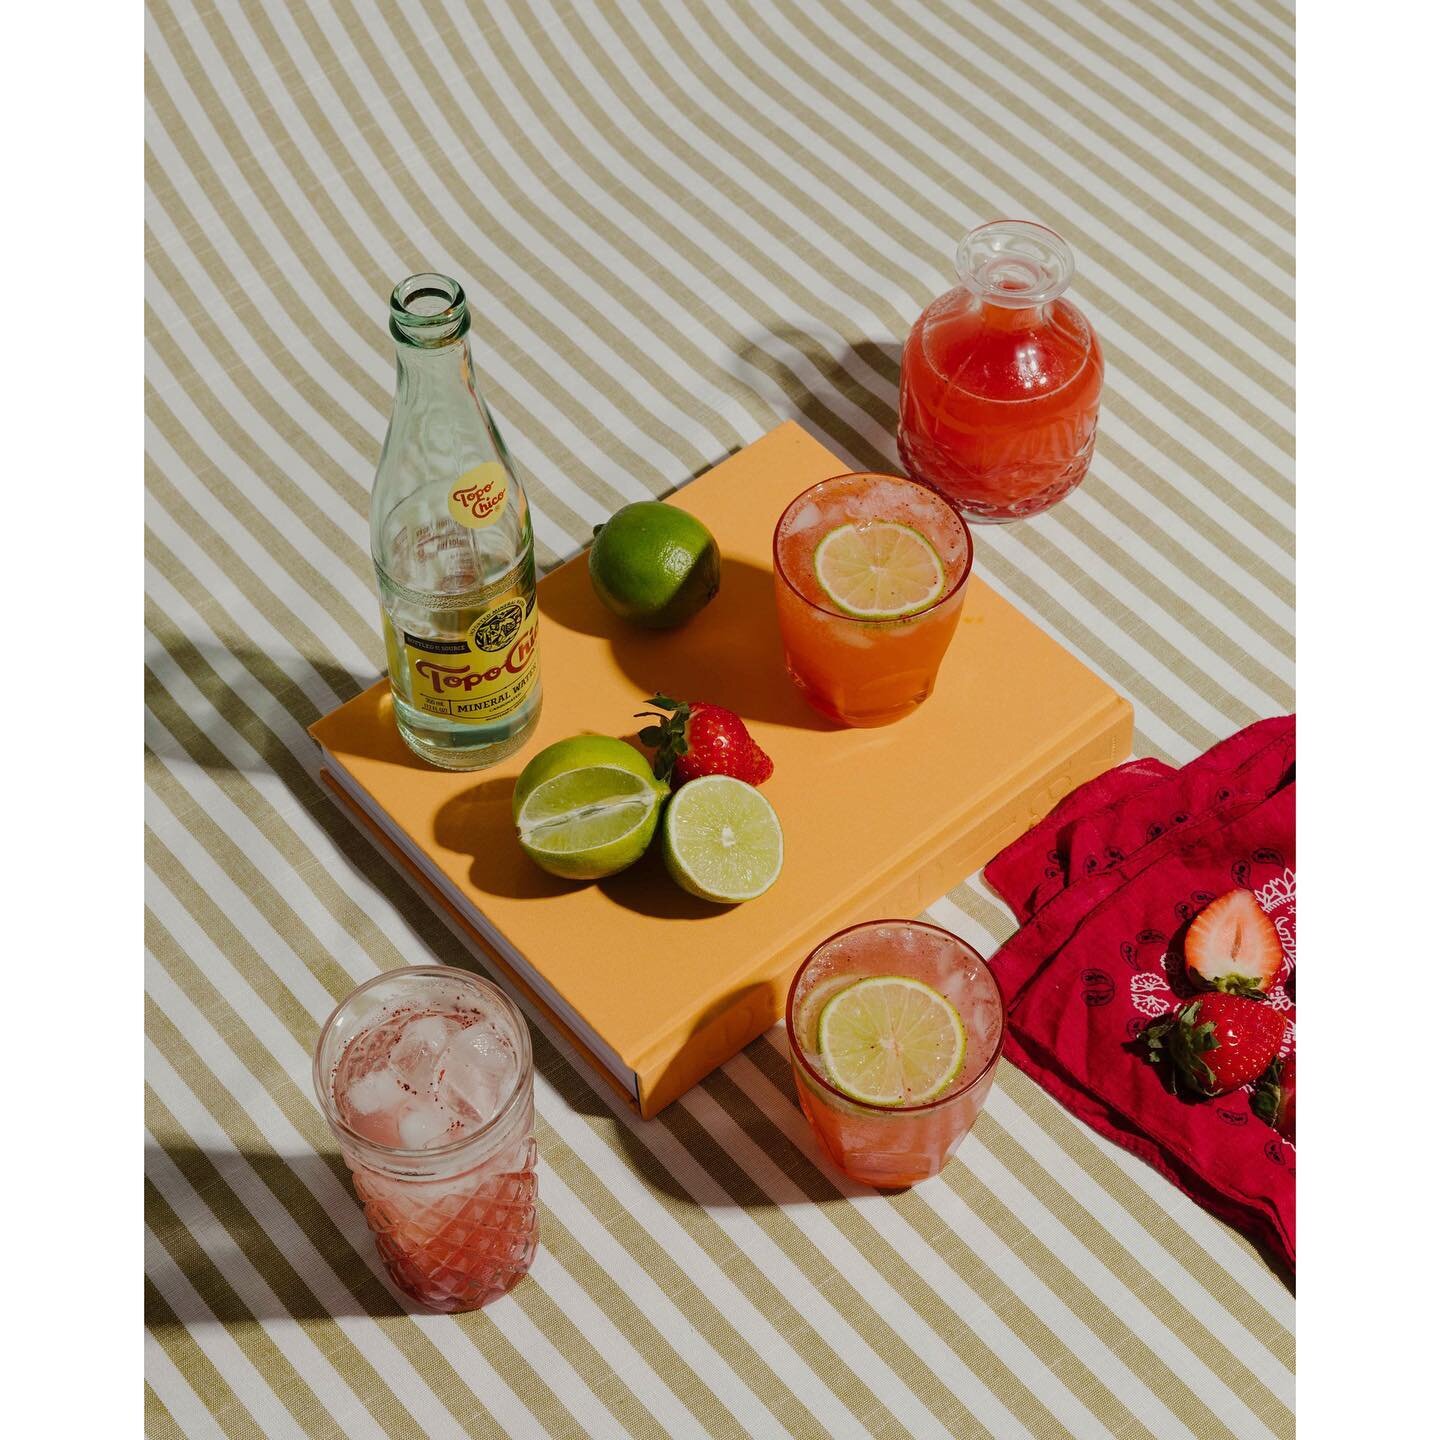 Recent work for the Alys Beach Gazette and @devote.studio 📰 
⠀⠀⠀⠀⠀⠀⠀⠀⠀
#cocktail #topochico #alysbeach #summerdrink #cocktails #cocktailsofinstagram